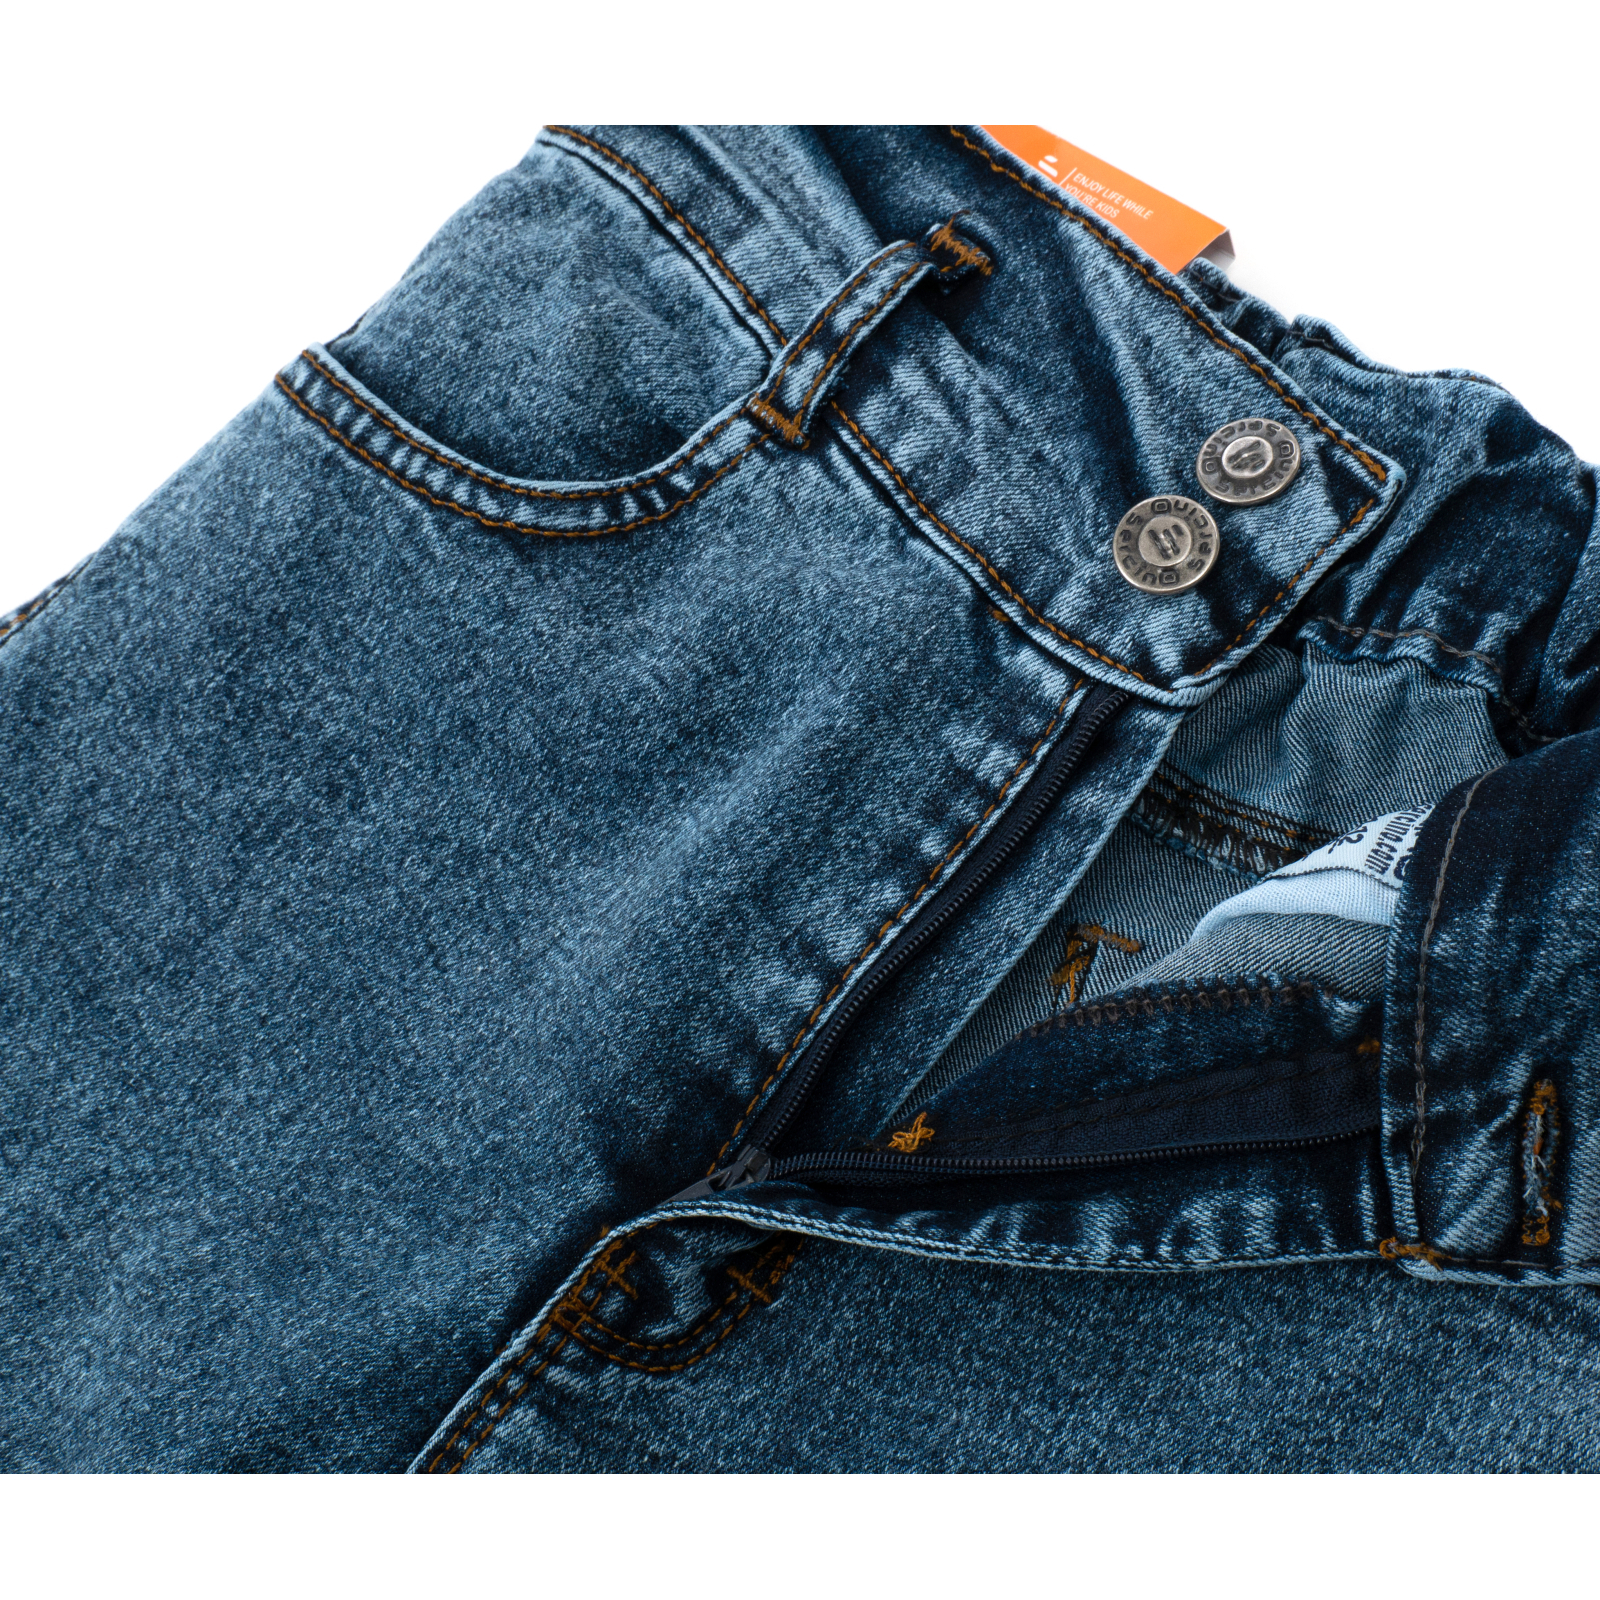 Джинсы Sercino с карманами (59654-158G-blue) изображение 6